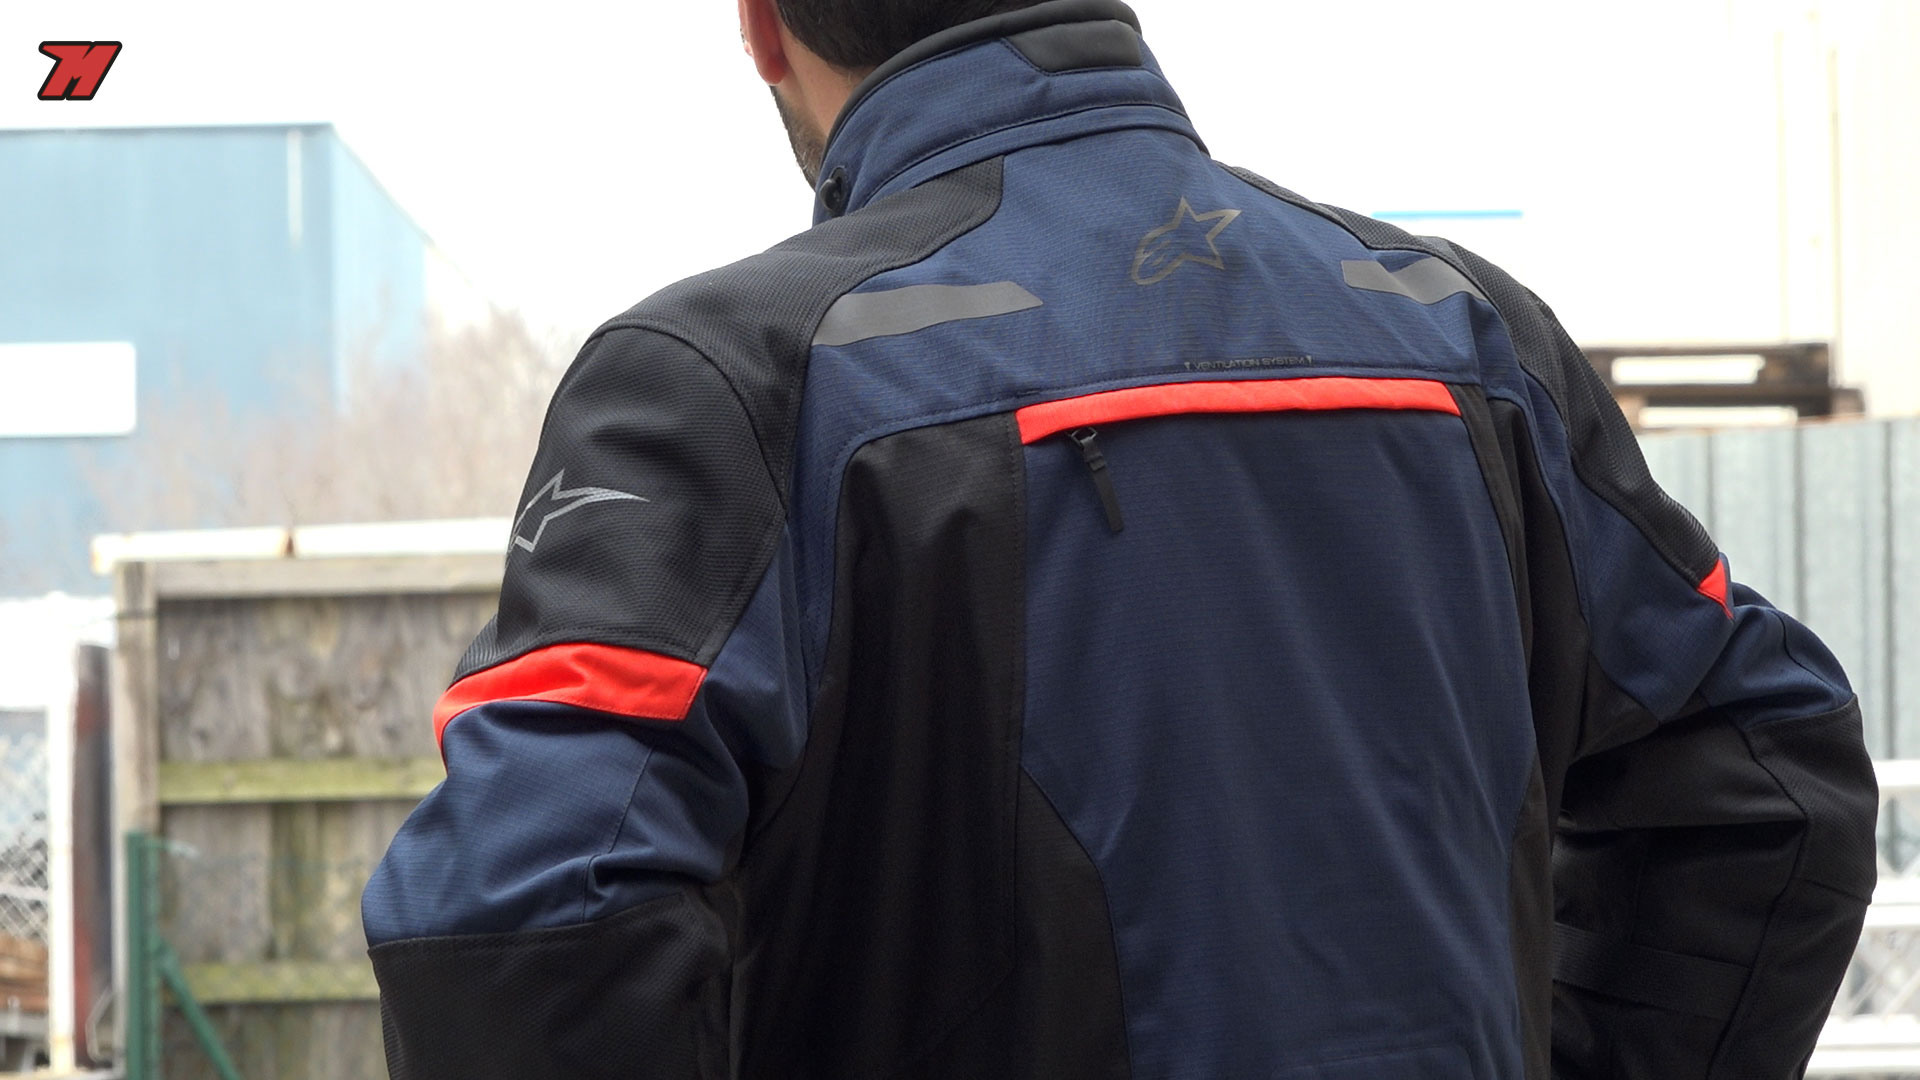 COMPARATIVA chaquetas de moto 4 ESTACIONES. ¿Cuál es la mejor? 🌦️🏍️⛰️ 